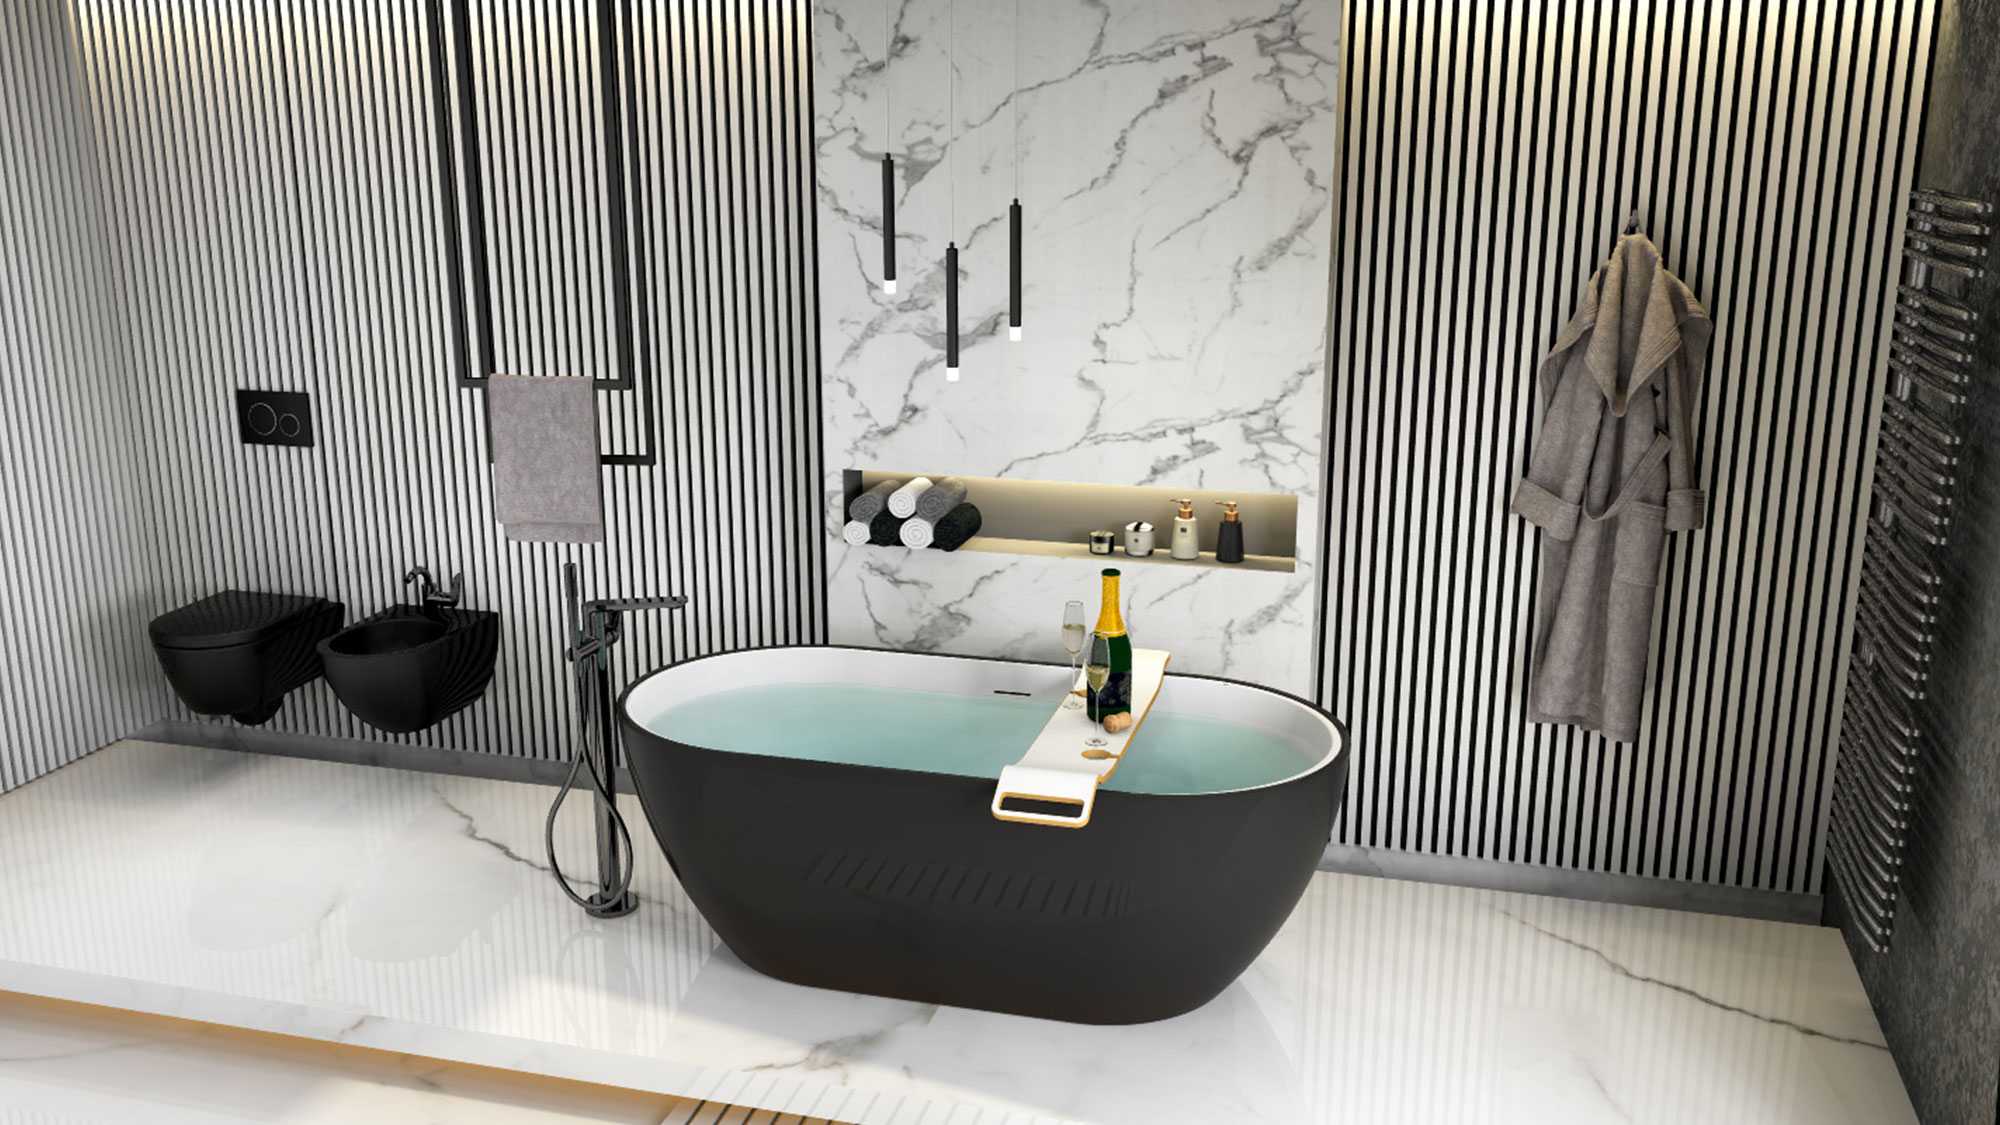 Einblick in ein stilvolles Badezimmer mit glänzenden Acrylplatten